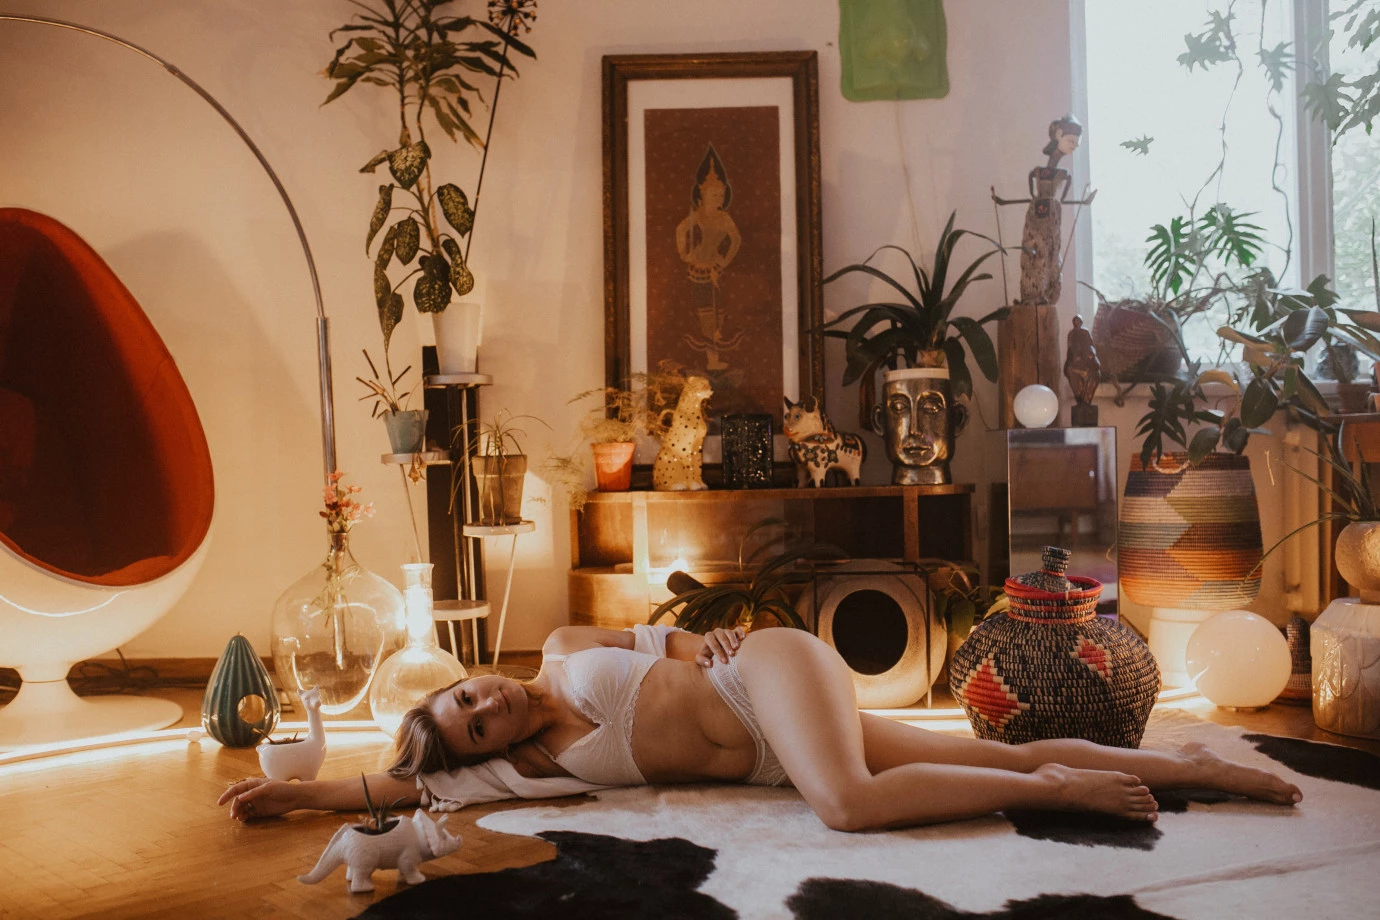 fotograf zakopane wart-dominika-wlodarska portfolio zdjecia sesja kobieca sensualna boudair sexy